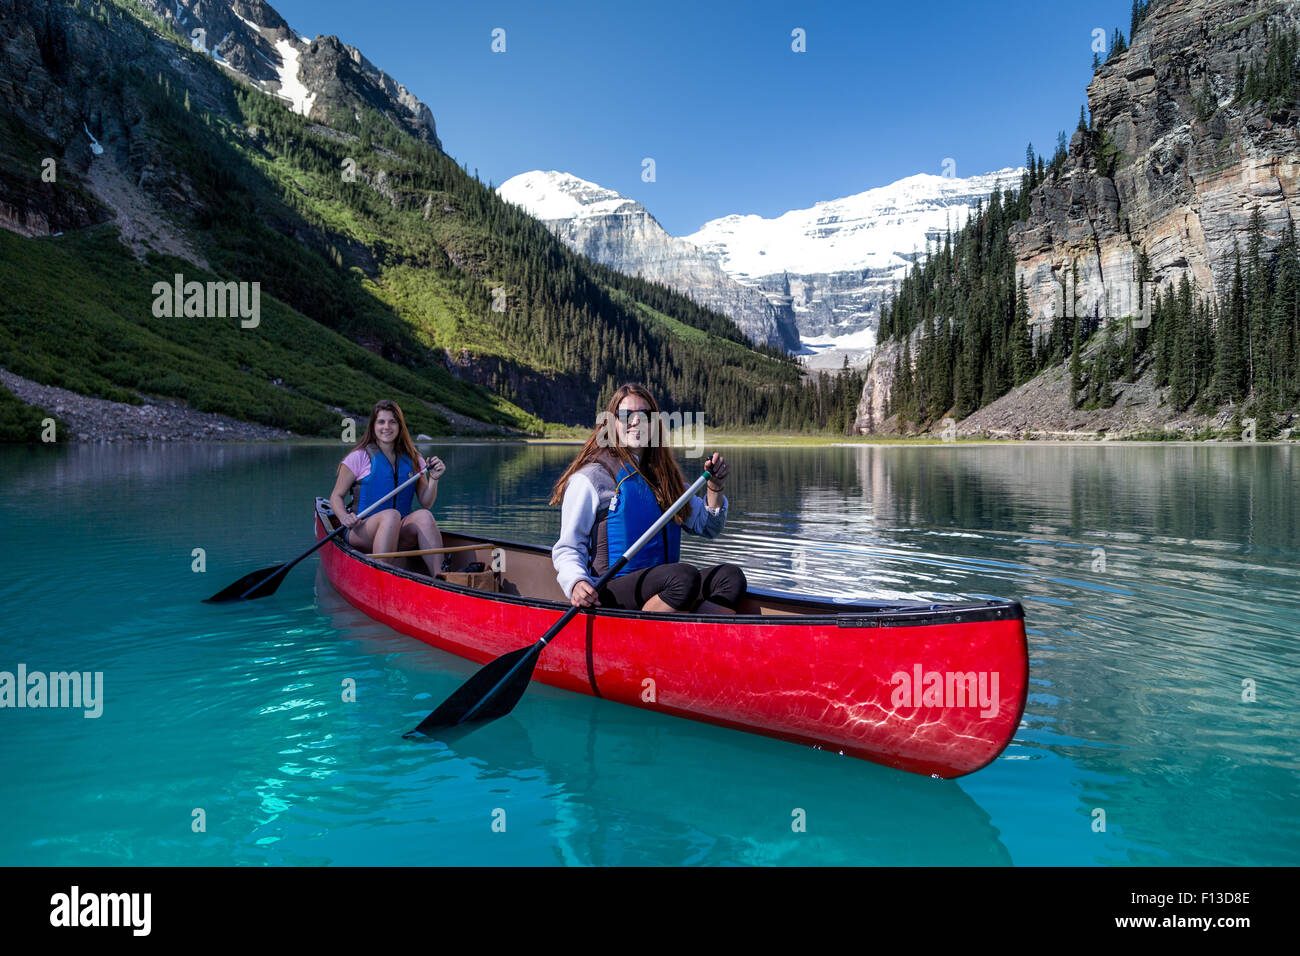 Two girls kayaking, Lake Louise, Banff National Park, Alberta, Canada Stock Photo